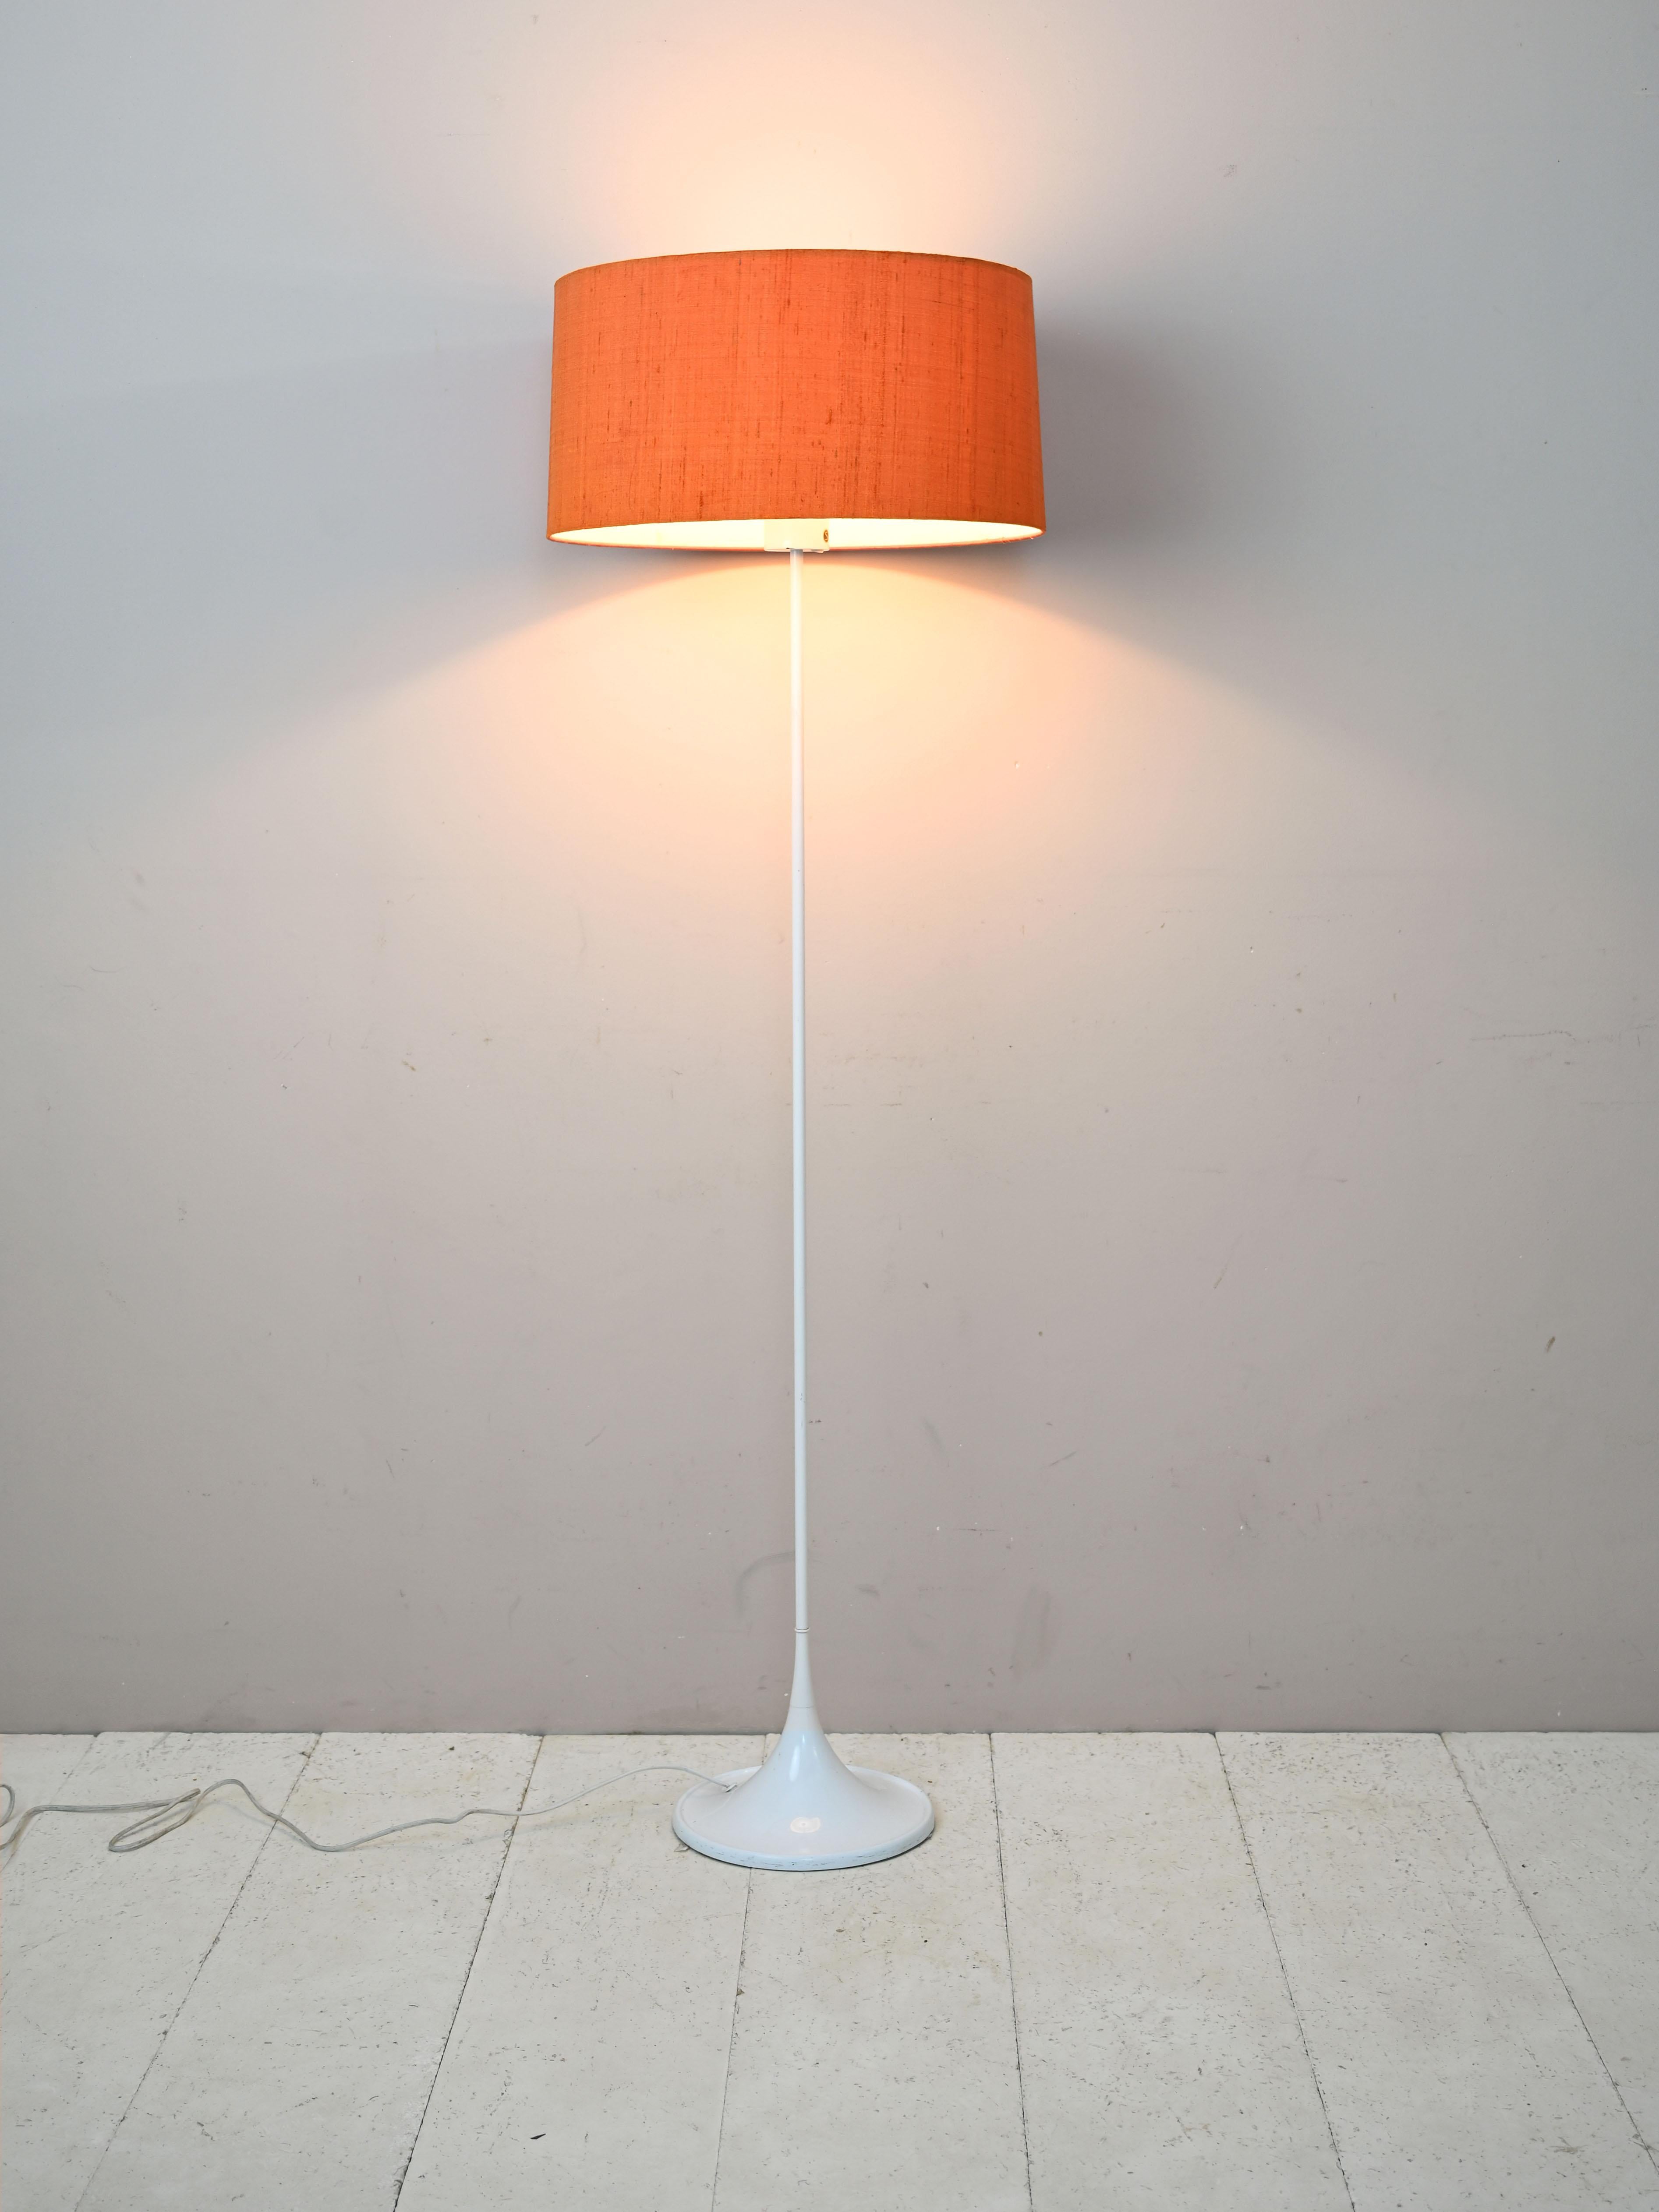 Lampe vintage moderniste scandinave en plastique et tissu.

Whiting se compose d'un cadre en plastique blanc et d'un abat-jour en tissu orange.
Elle se distingue par sa longue tige élancée et son large abat-jour coloré qui rappelle le goût et le